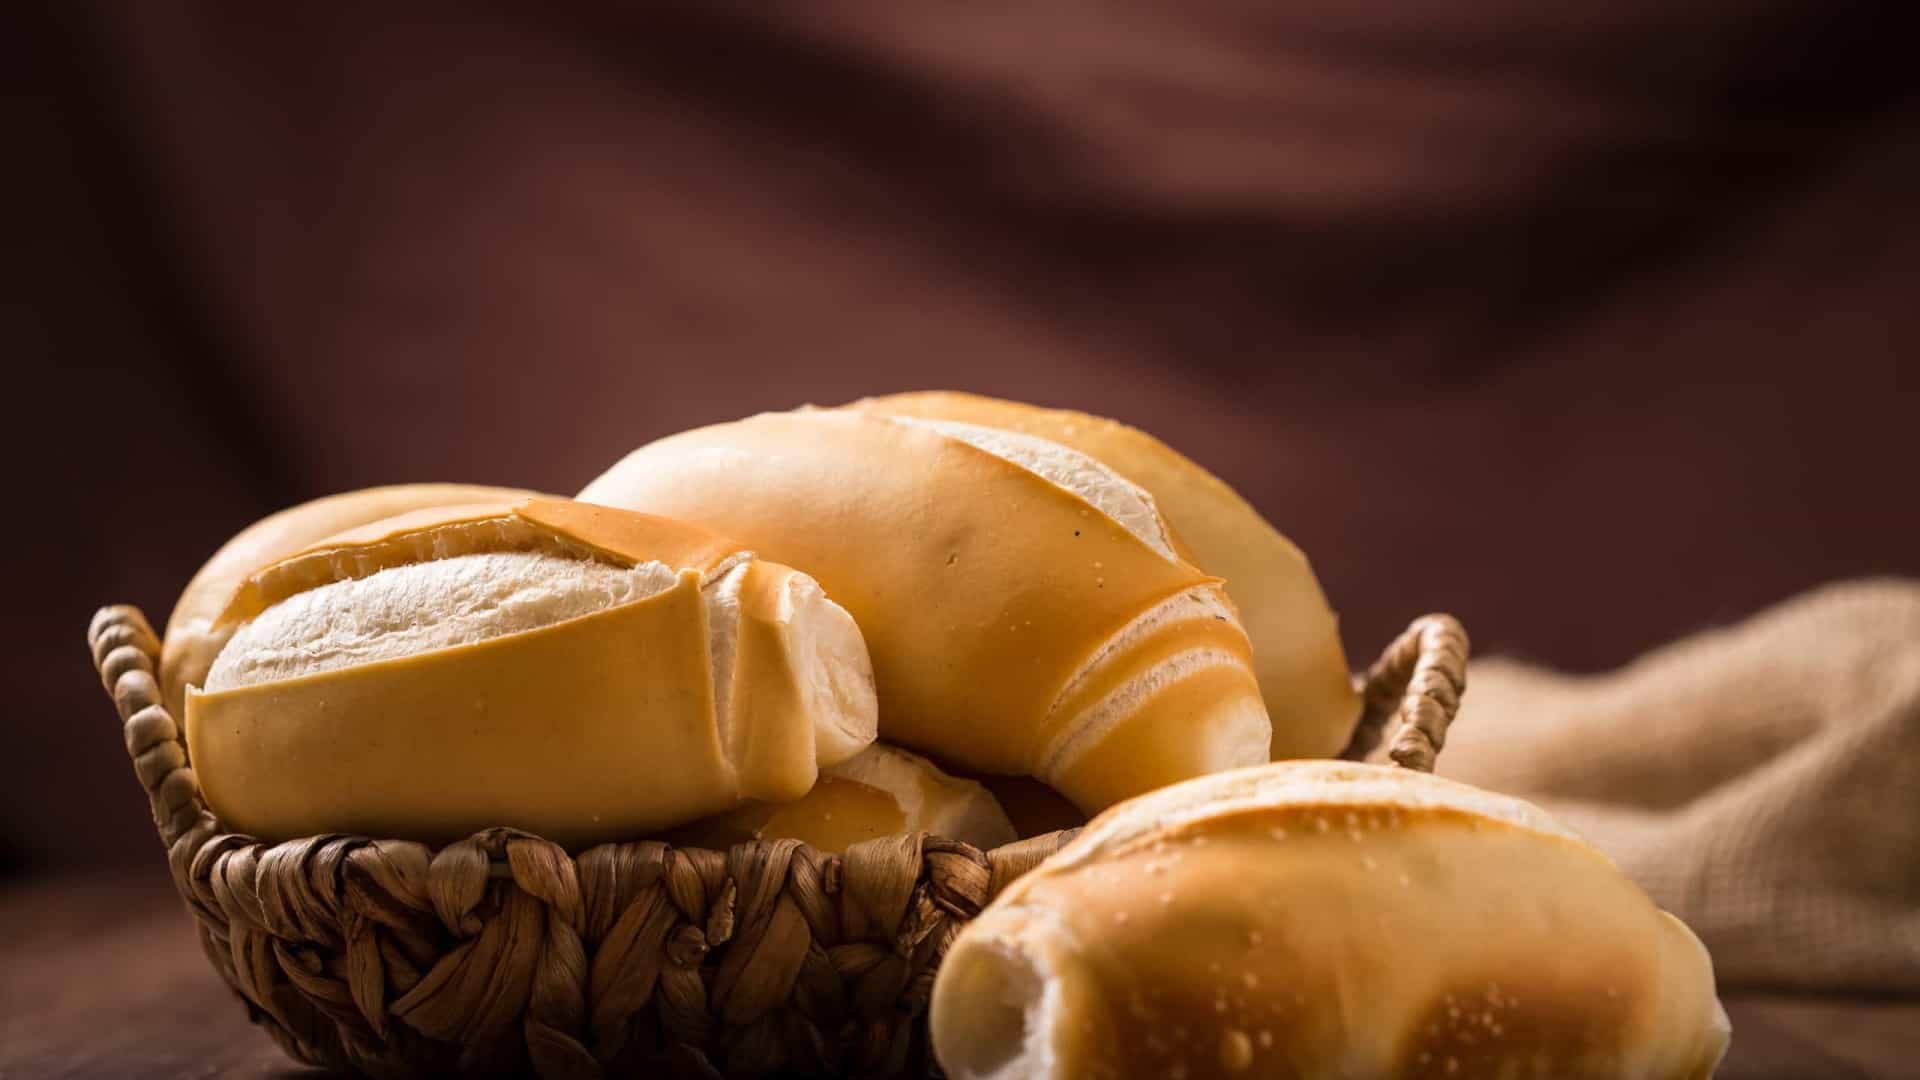 Mitos e verdades sobre o pãozinho e outros carboidratos